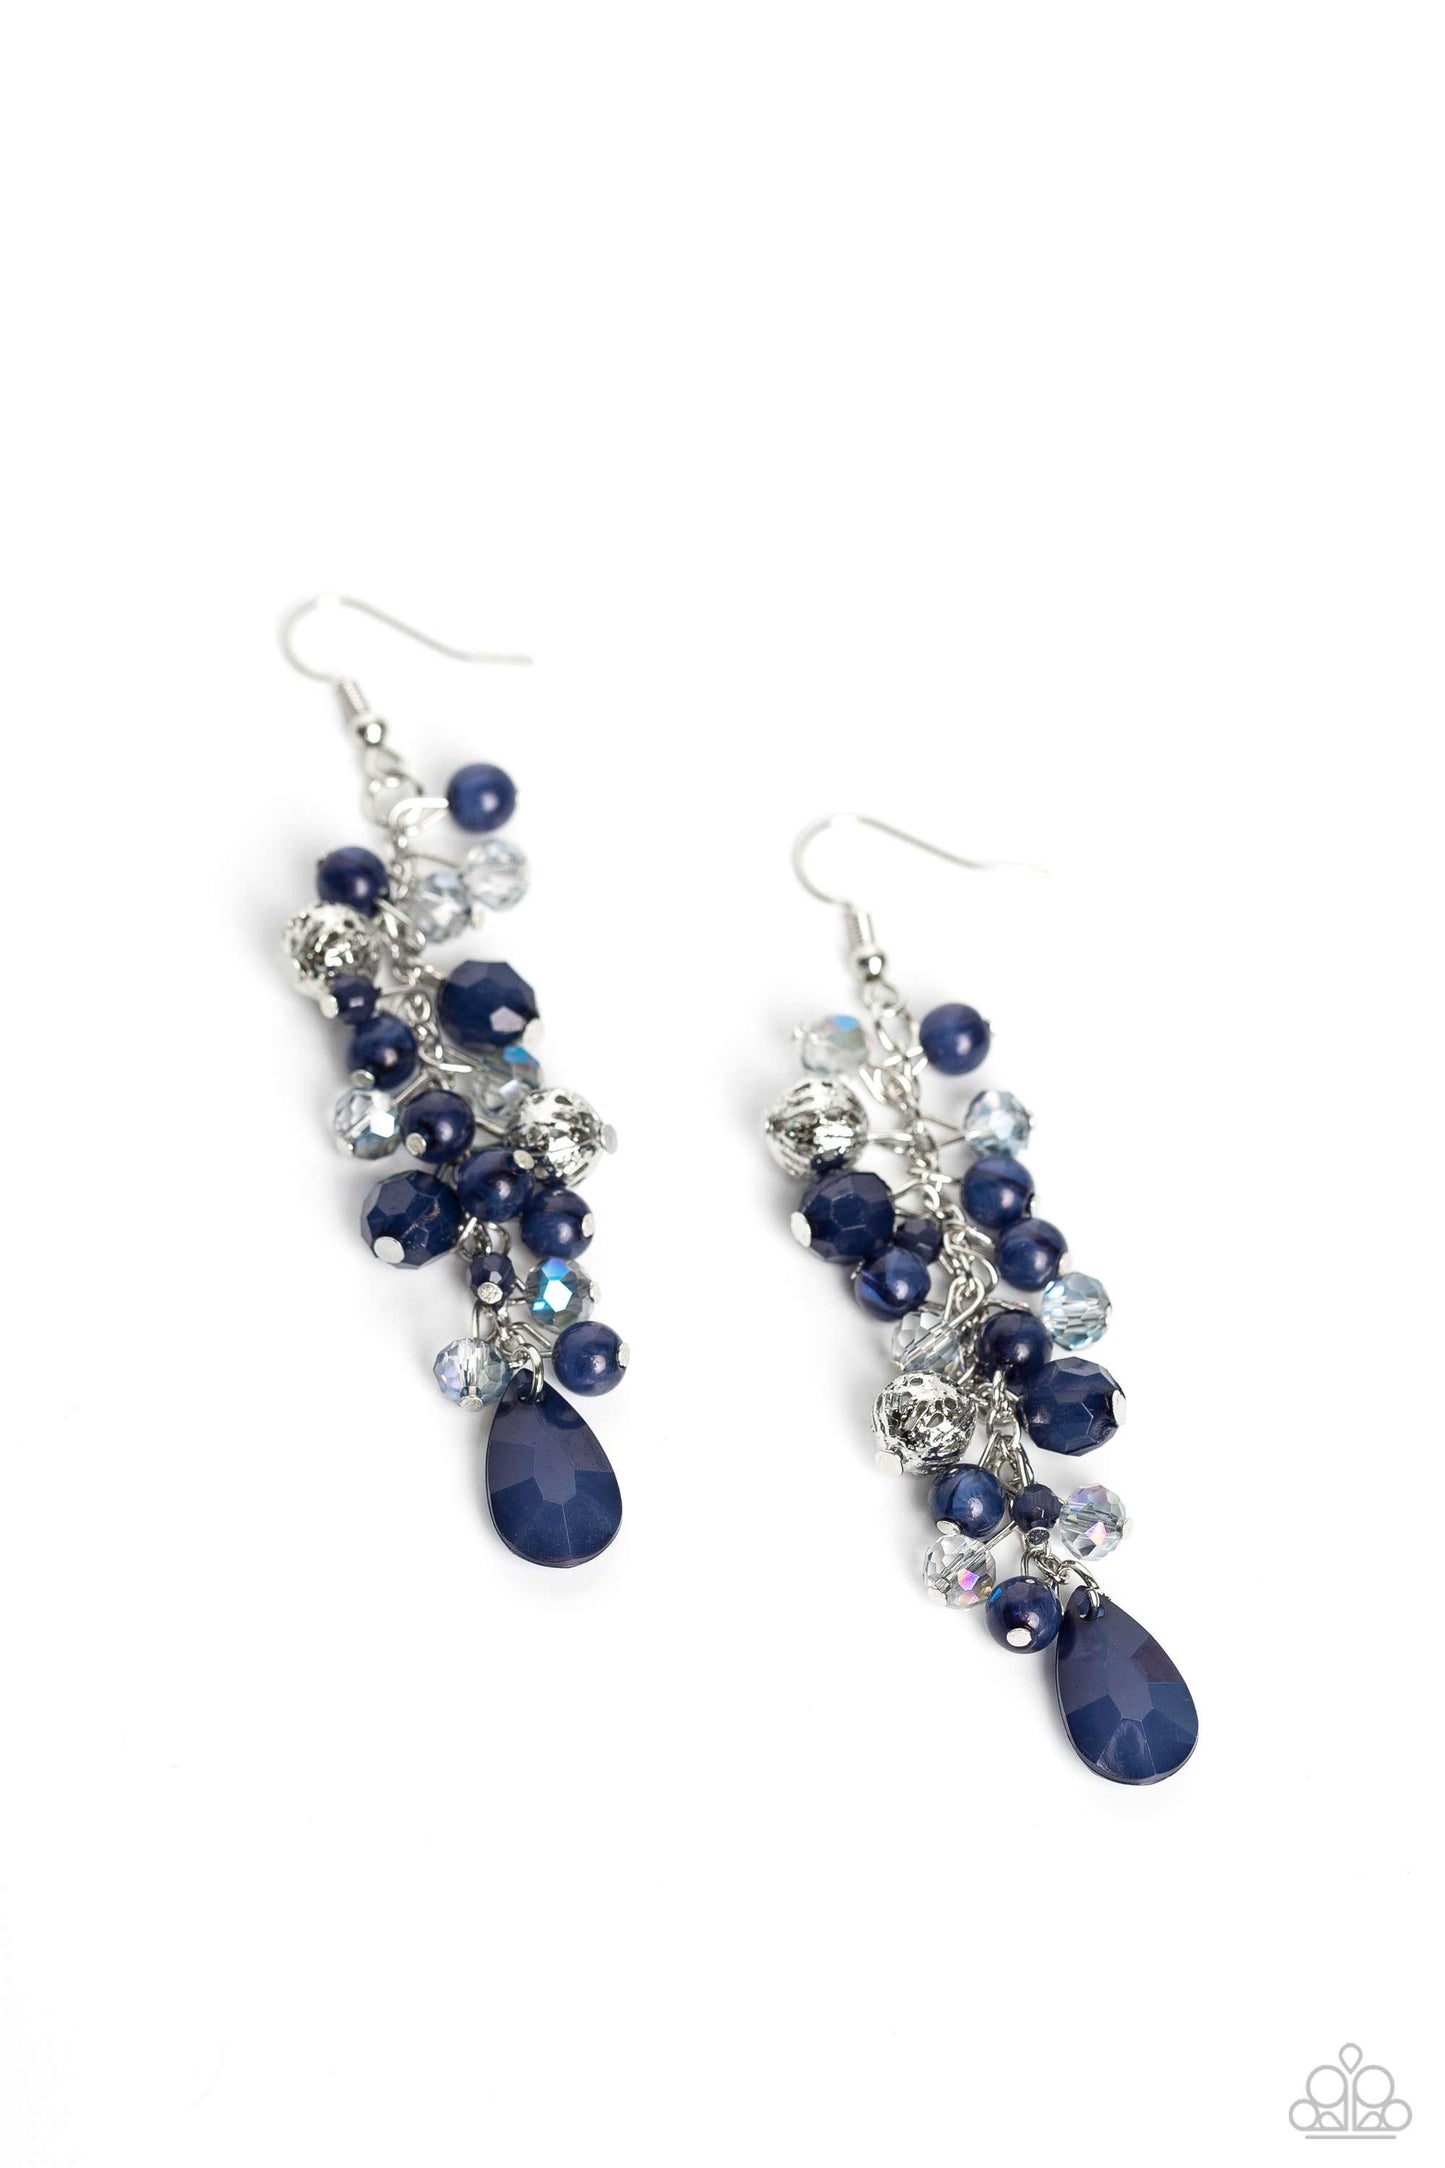 Paparazzi Accessories - Cheeky Cascade - Blue Earrings - Bling by JessieK